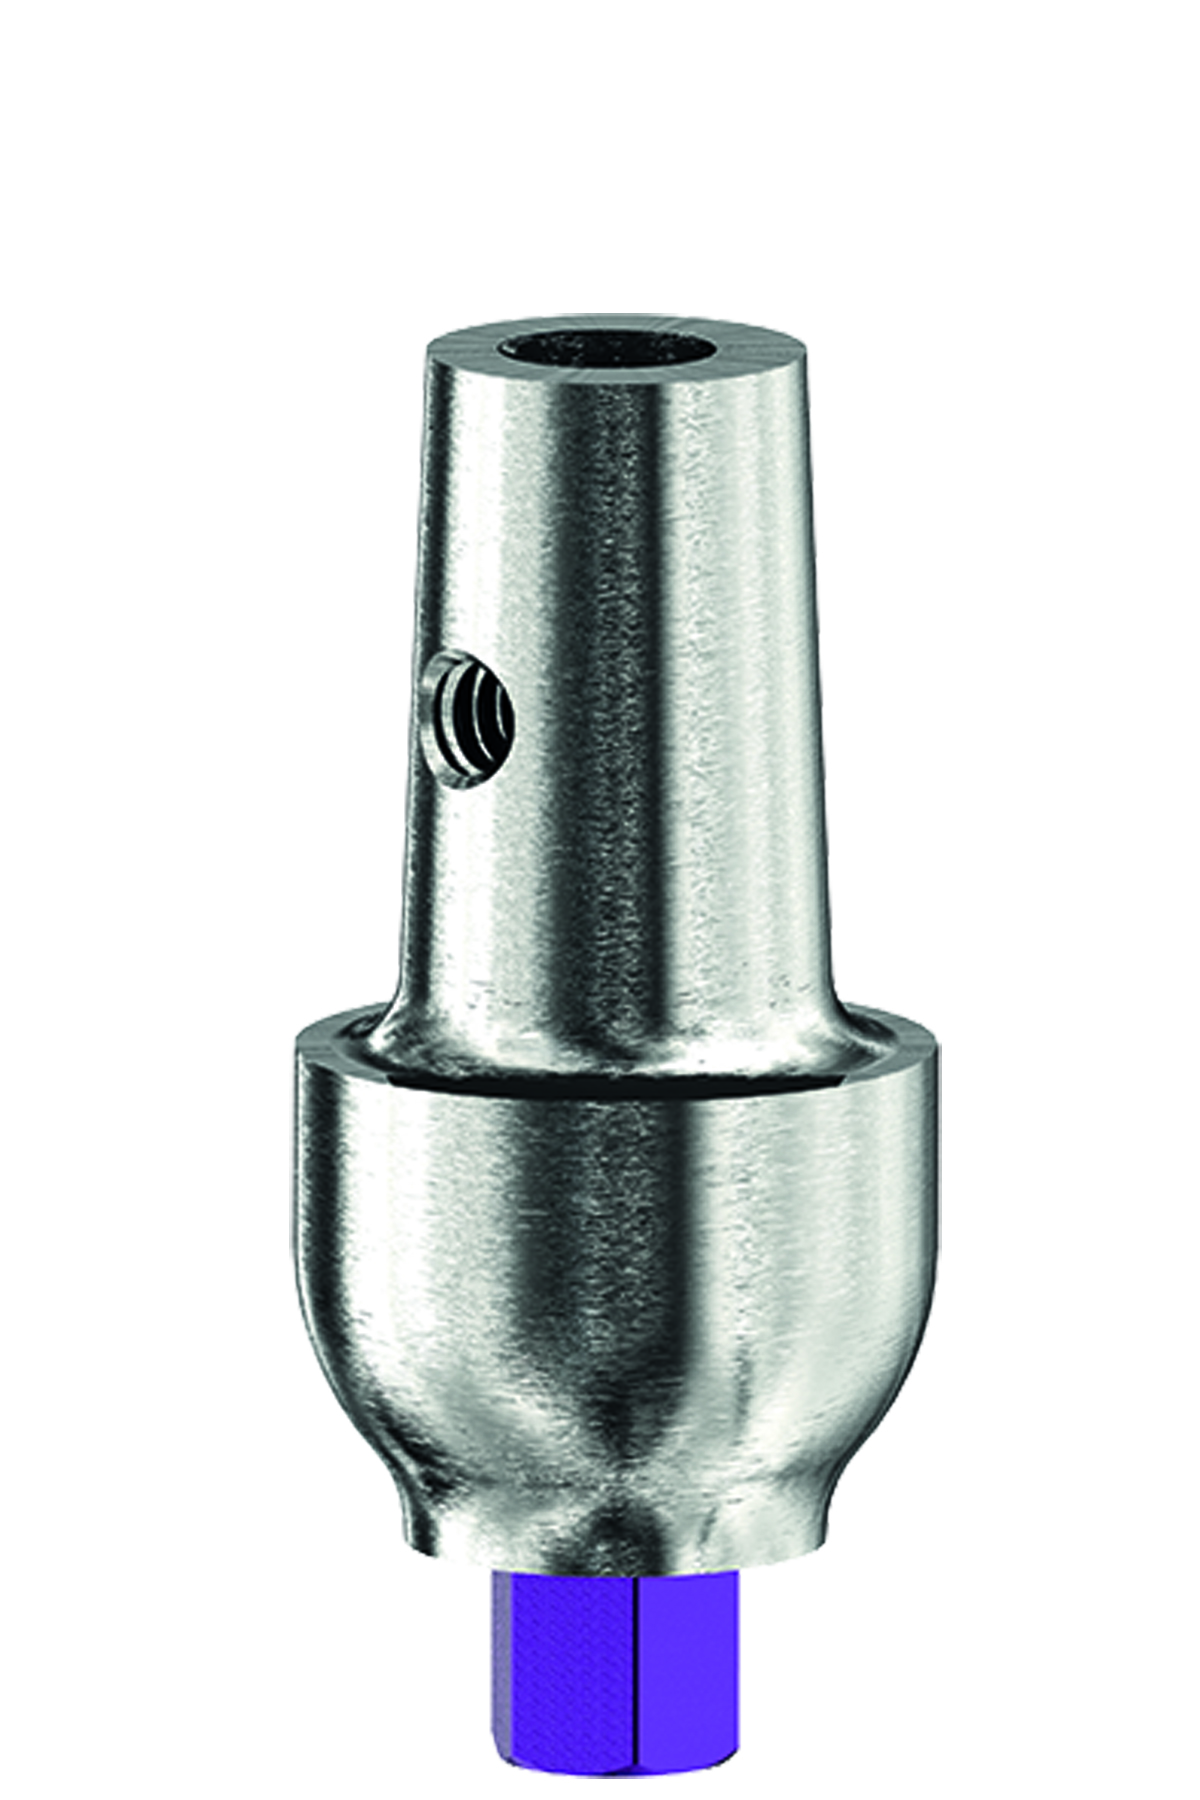 Абатмент прямой дистальный (Ø 4.2 мм, шейка 5.0 мм) в комплекте с винтом